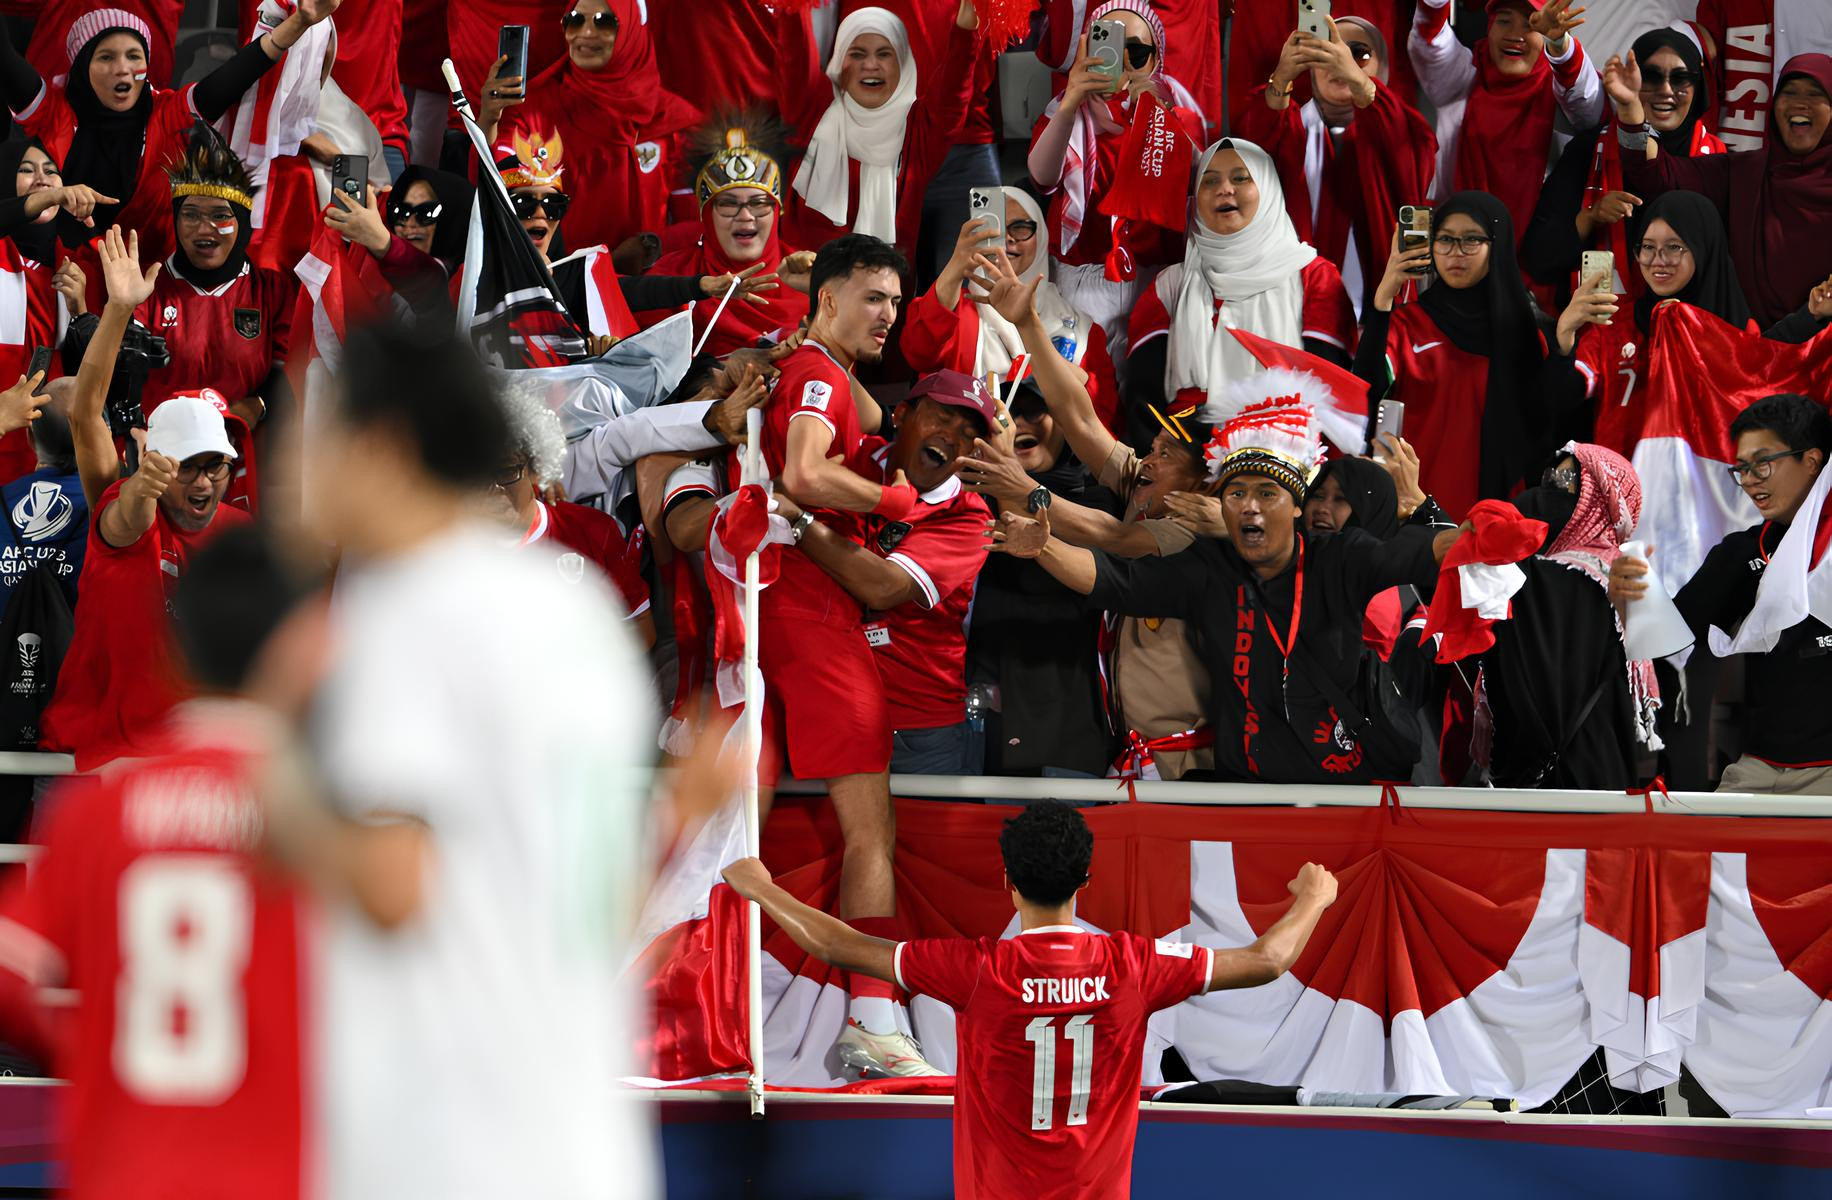 Jantan! Respons Shin Tae Yong Seusai Timnas U-23 Indonesia Takluk dari Irak - JPNN.com